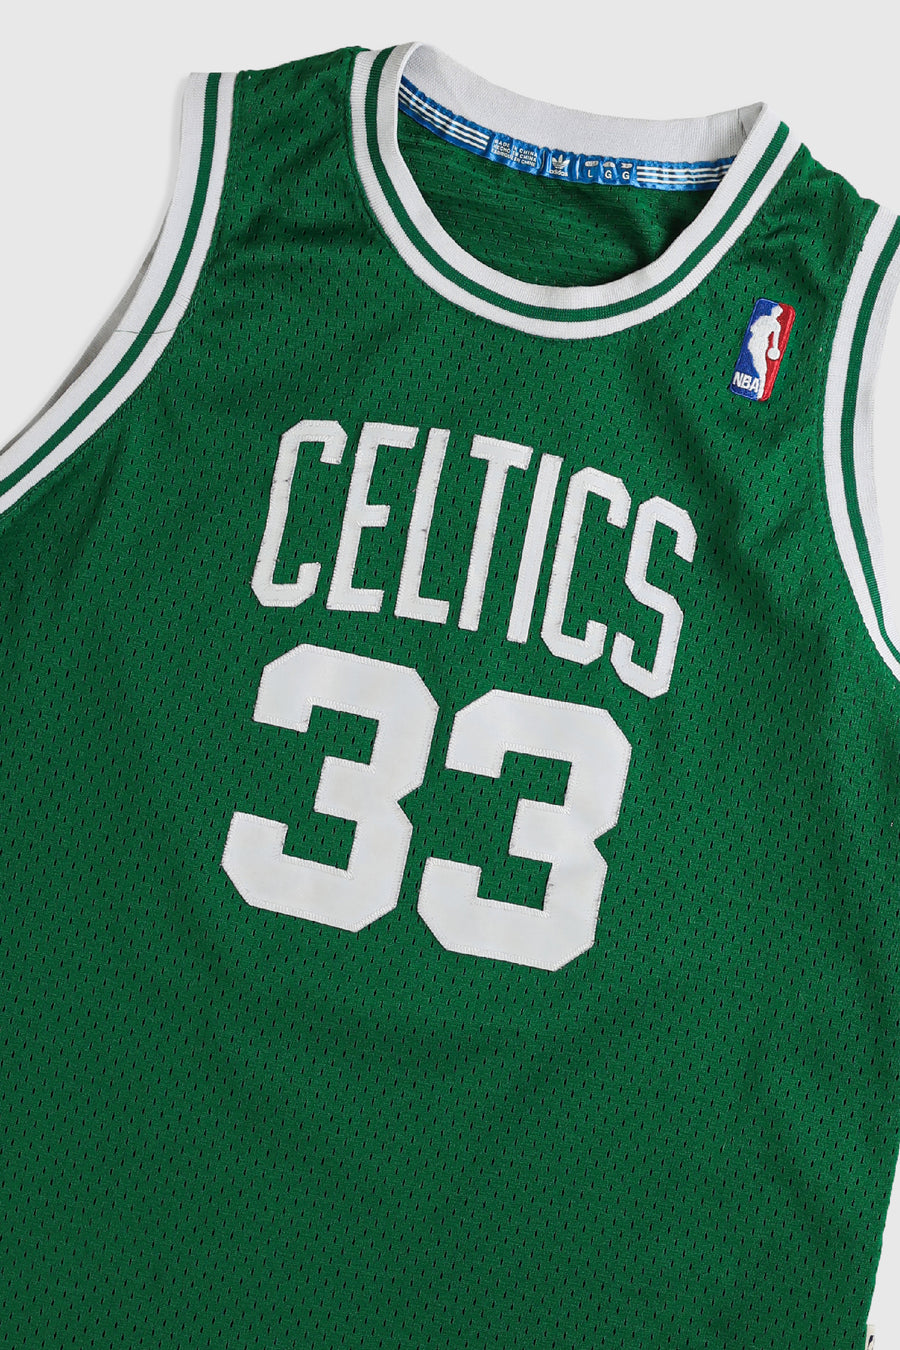 Vintage Celtics Jersey